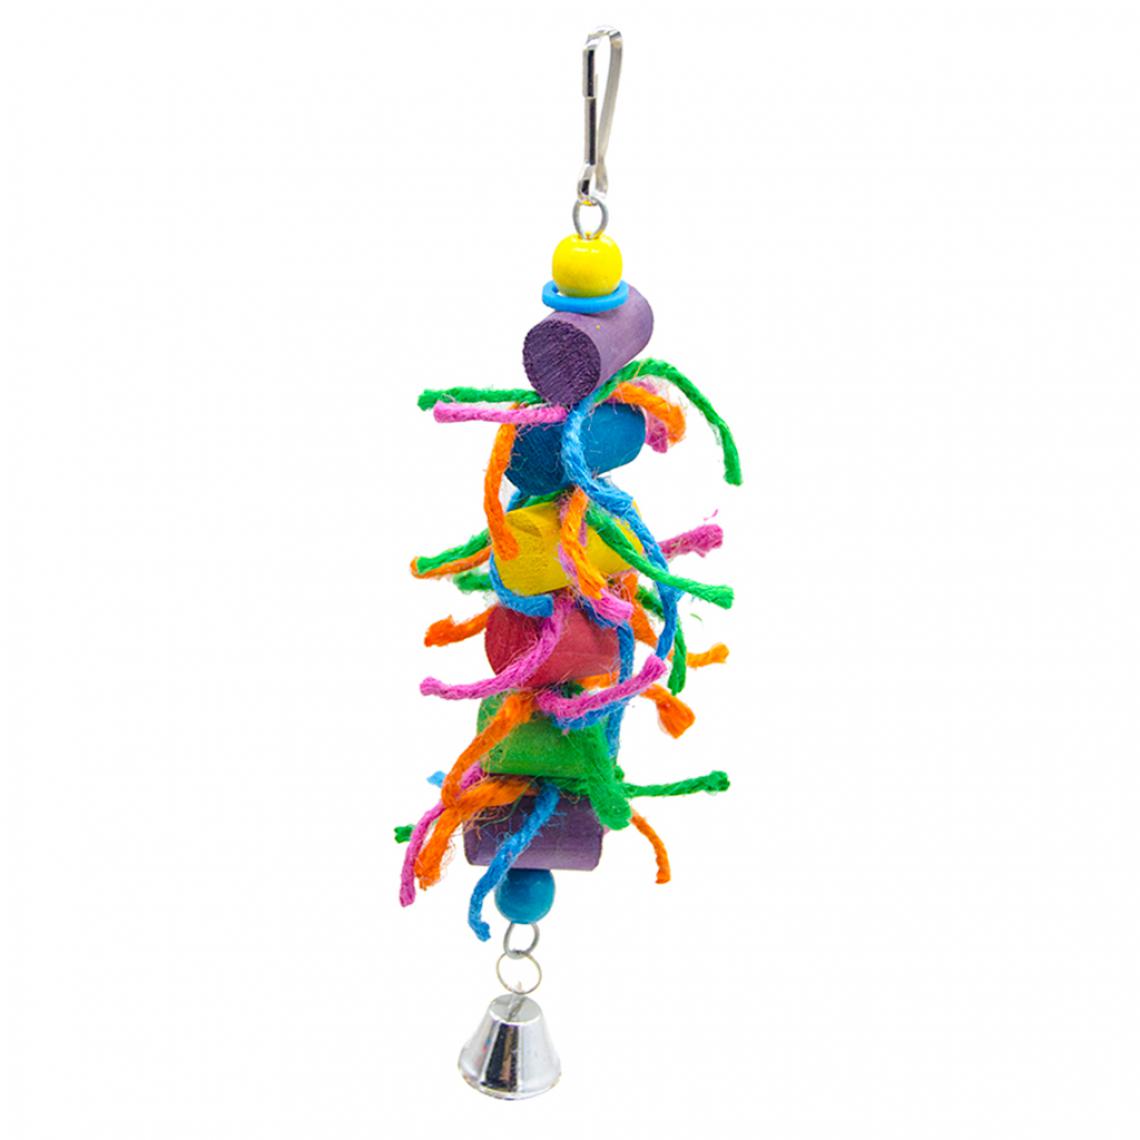 marque generique - Type de jouet suspendu à croquer arc-en-ciel naturel coloré de bloc de noeud de jouet de perroquet type 3 - Jouet pour chien